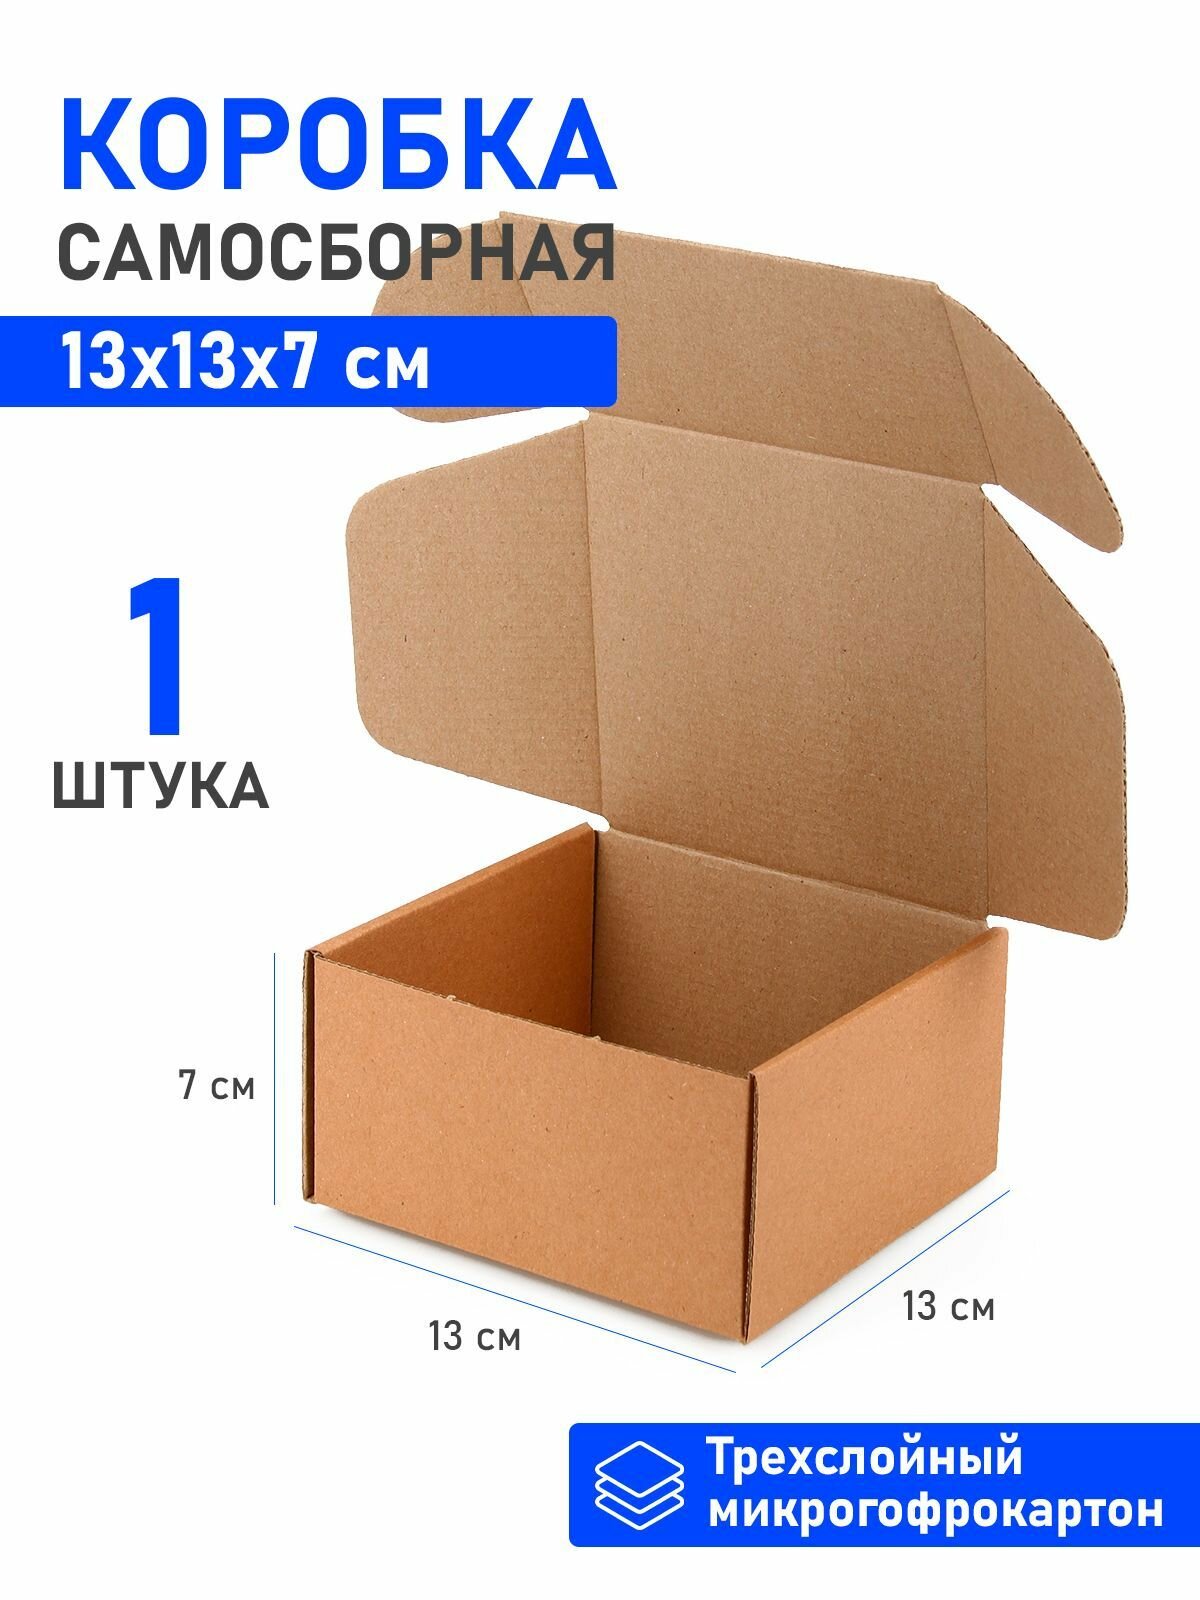 Квадратная крафтовая самосборная картонная коробка 13х13х7 см - 1 штука, новогодние подарочные коробки для хранения и подарков